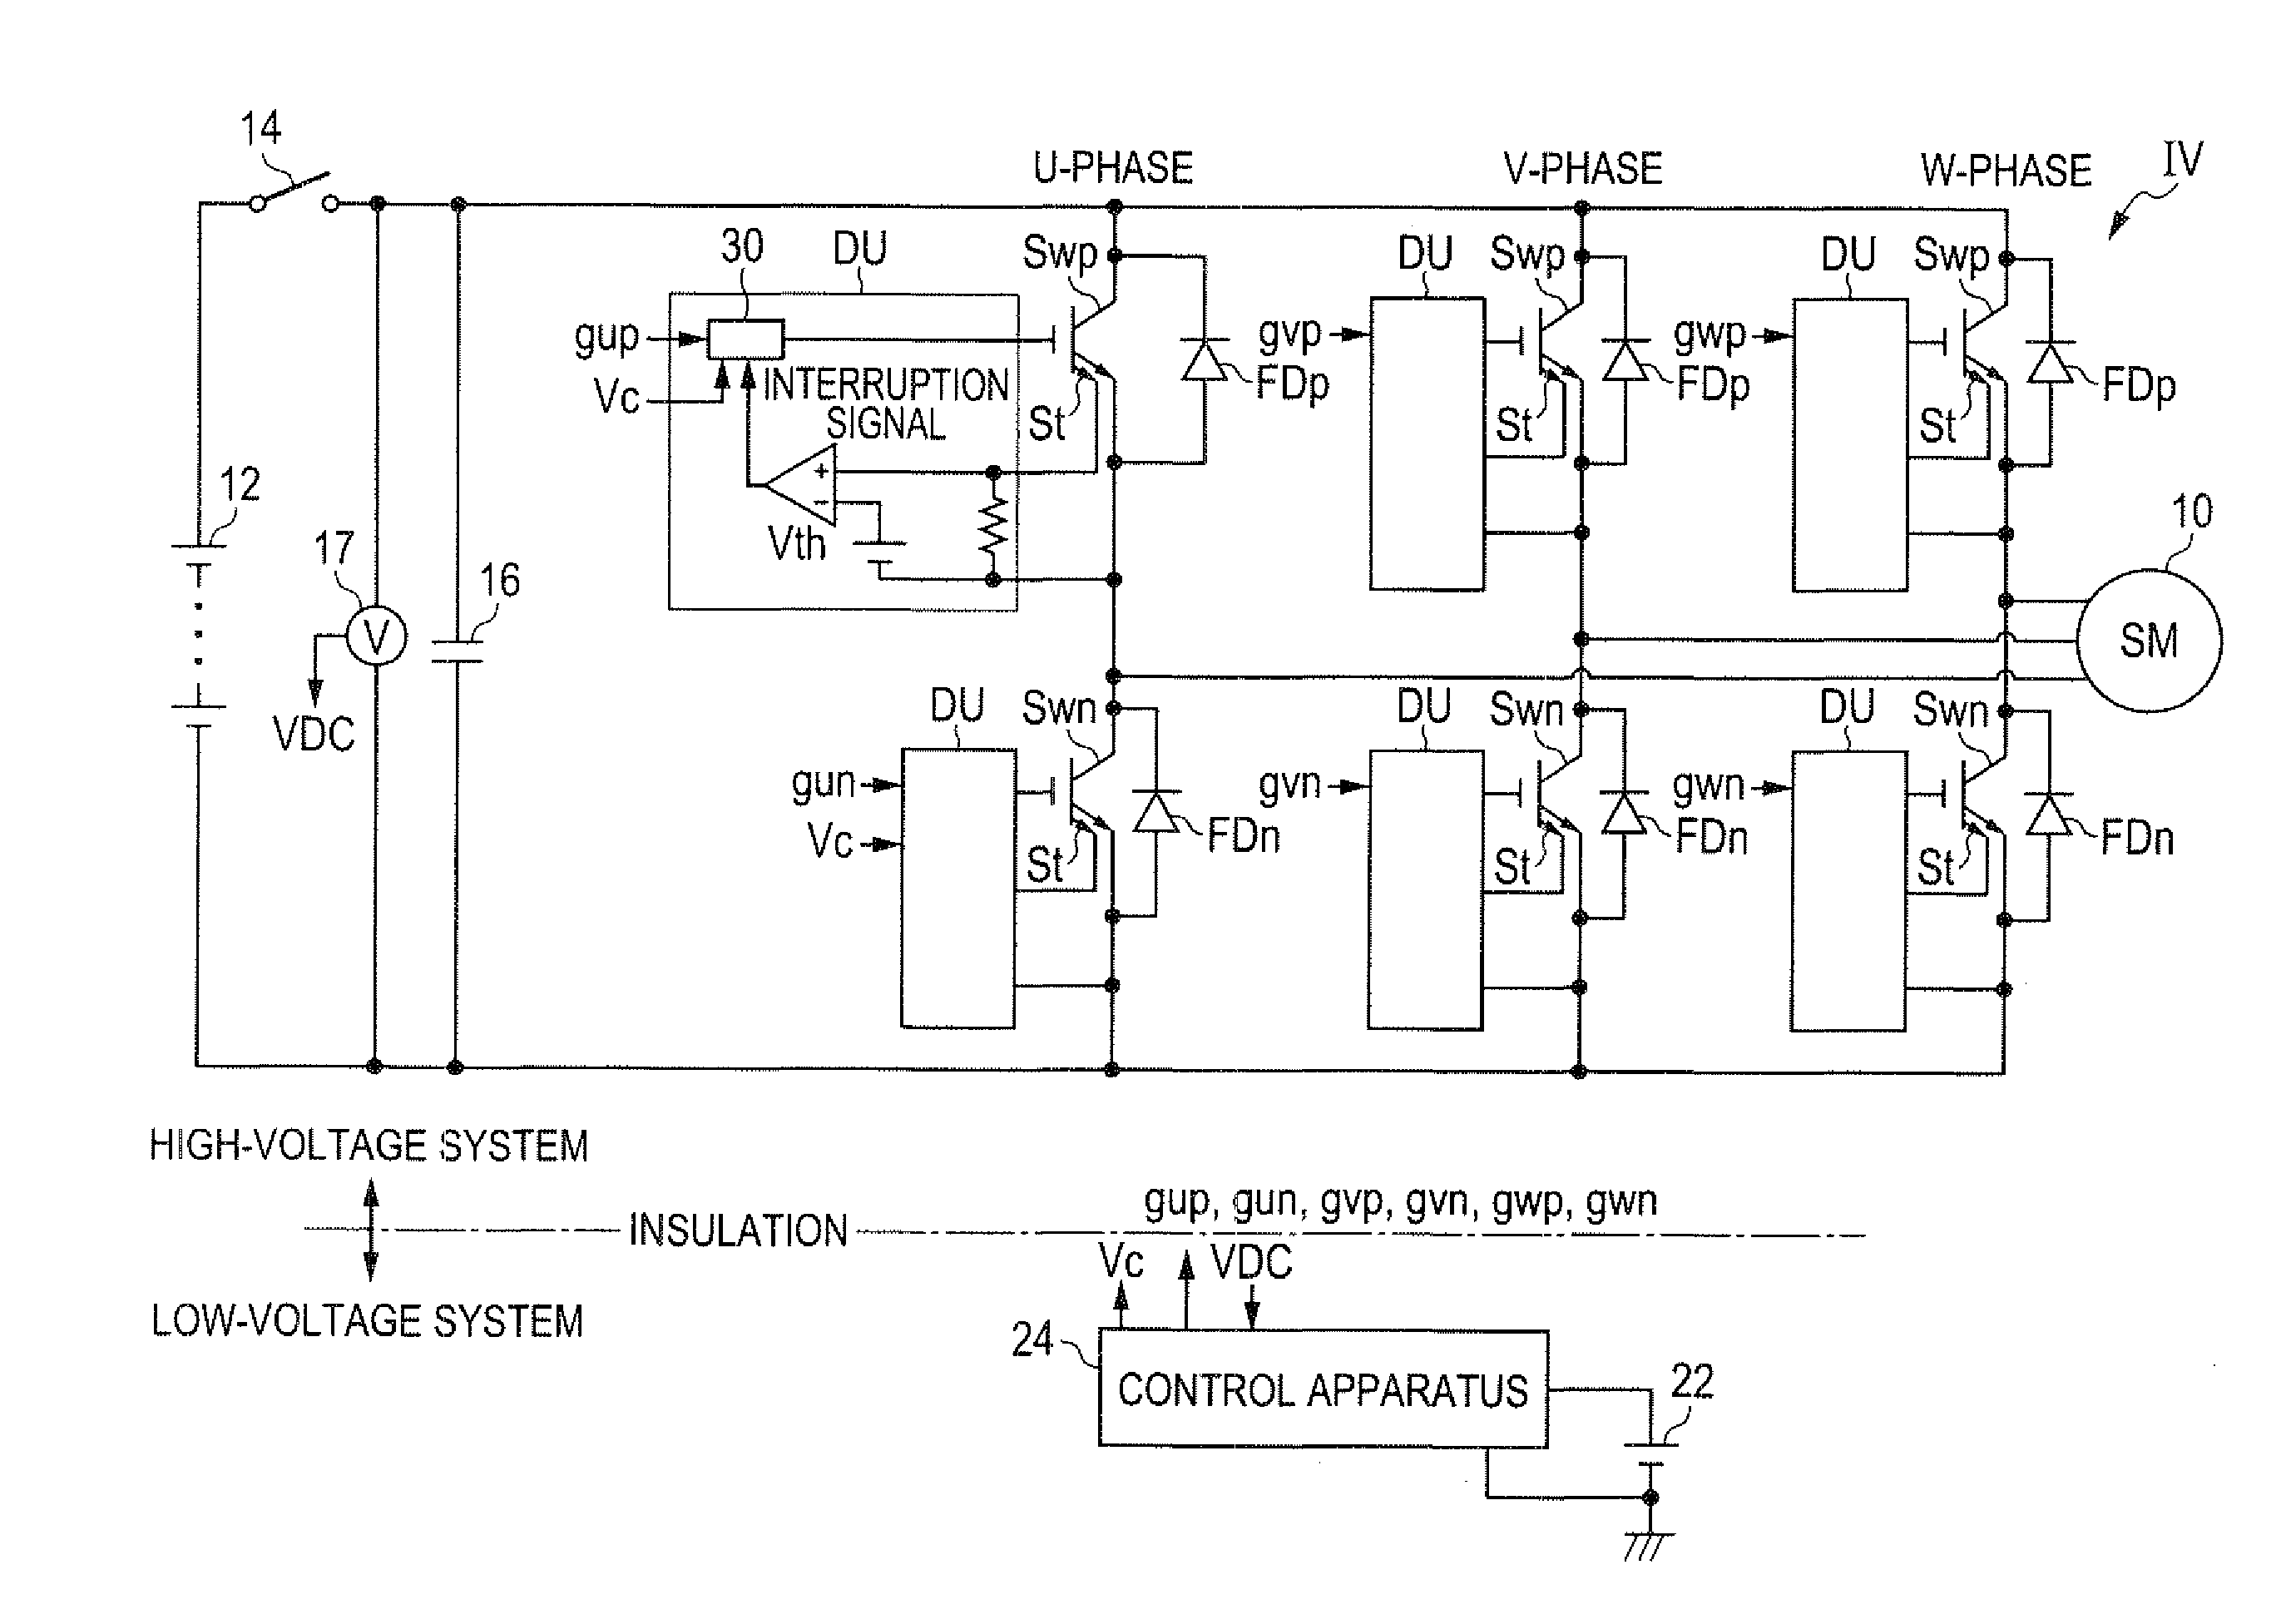 Power conversion control apparatus